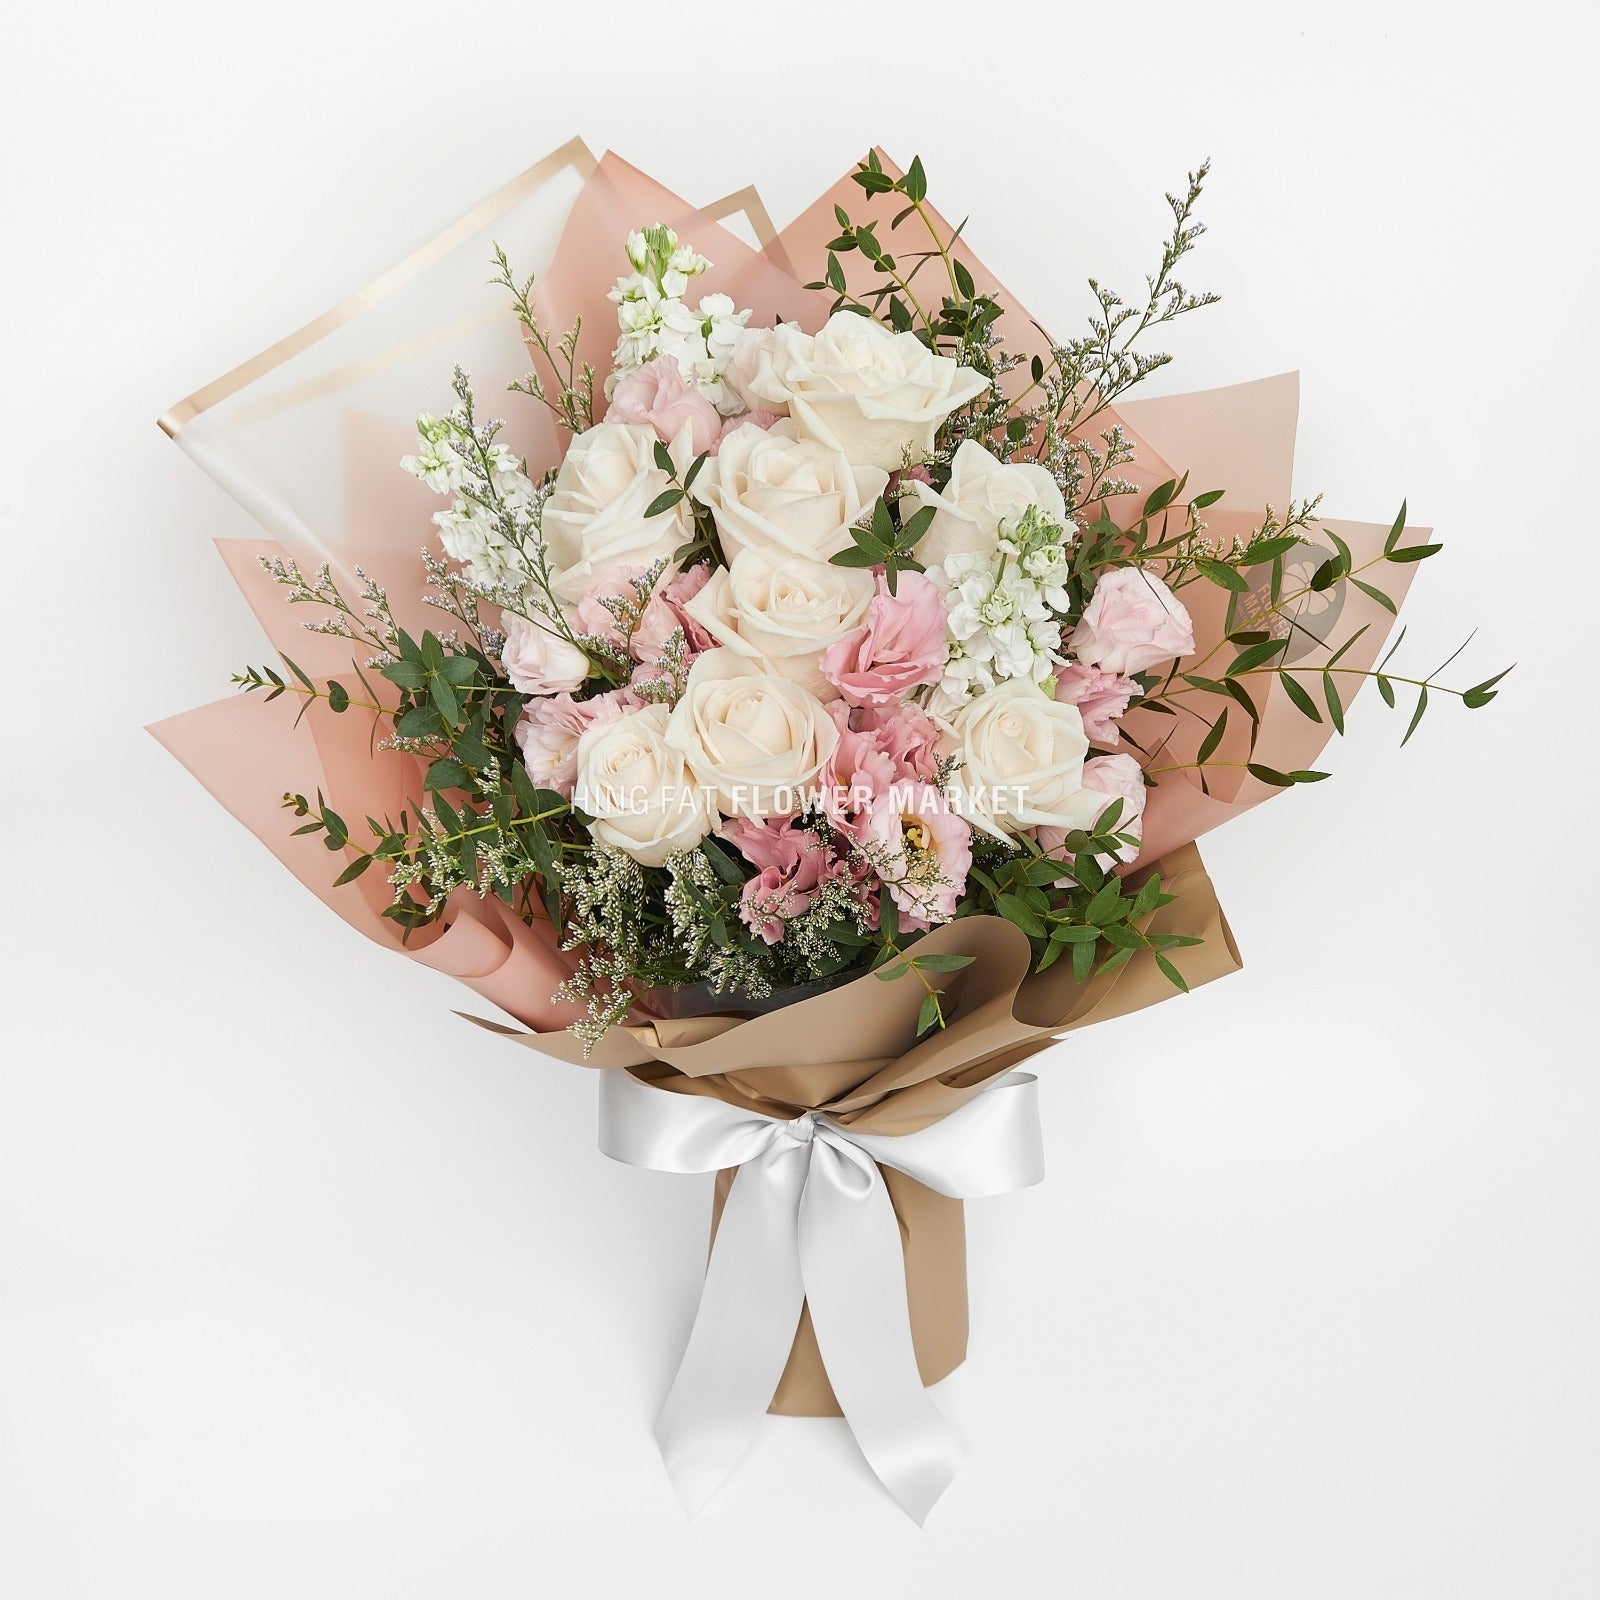 米色玫瑰桔梗花束 Beige rose and eustoma bouquet